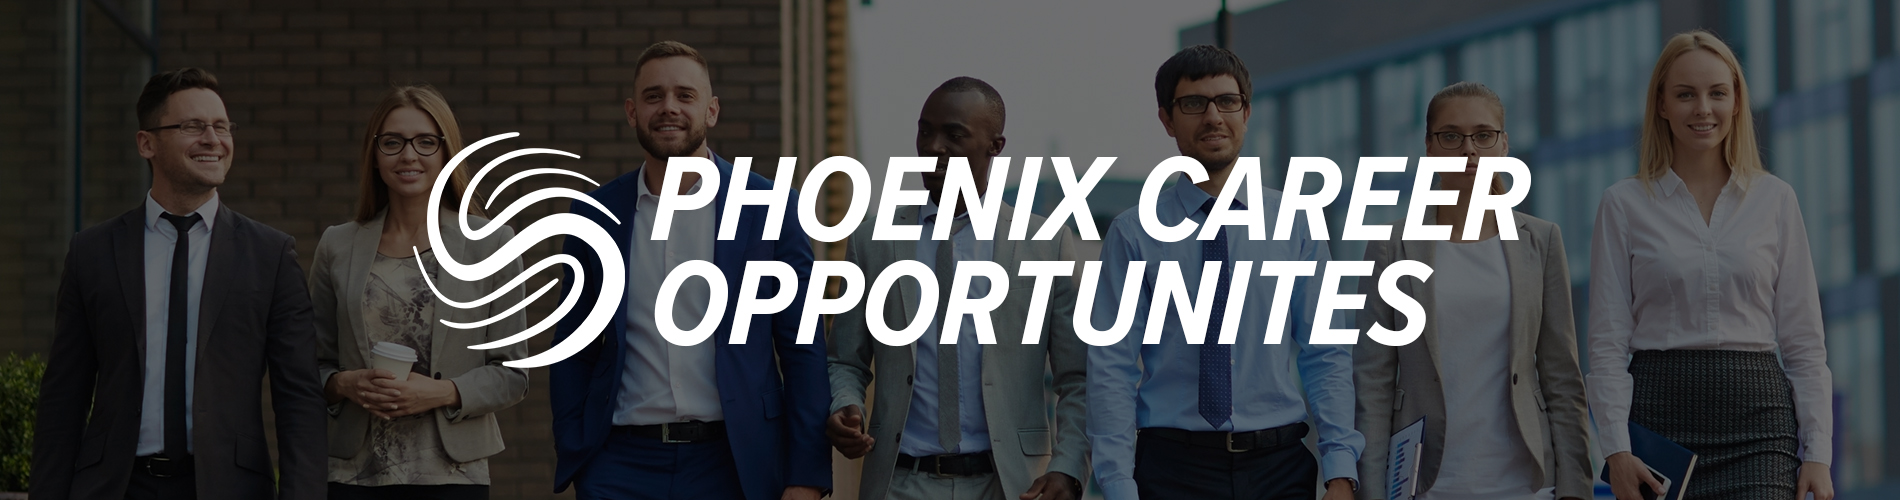 Banner - Career Opportunities in Phoenix, Arizona